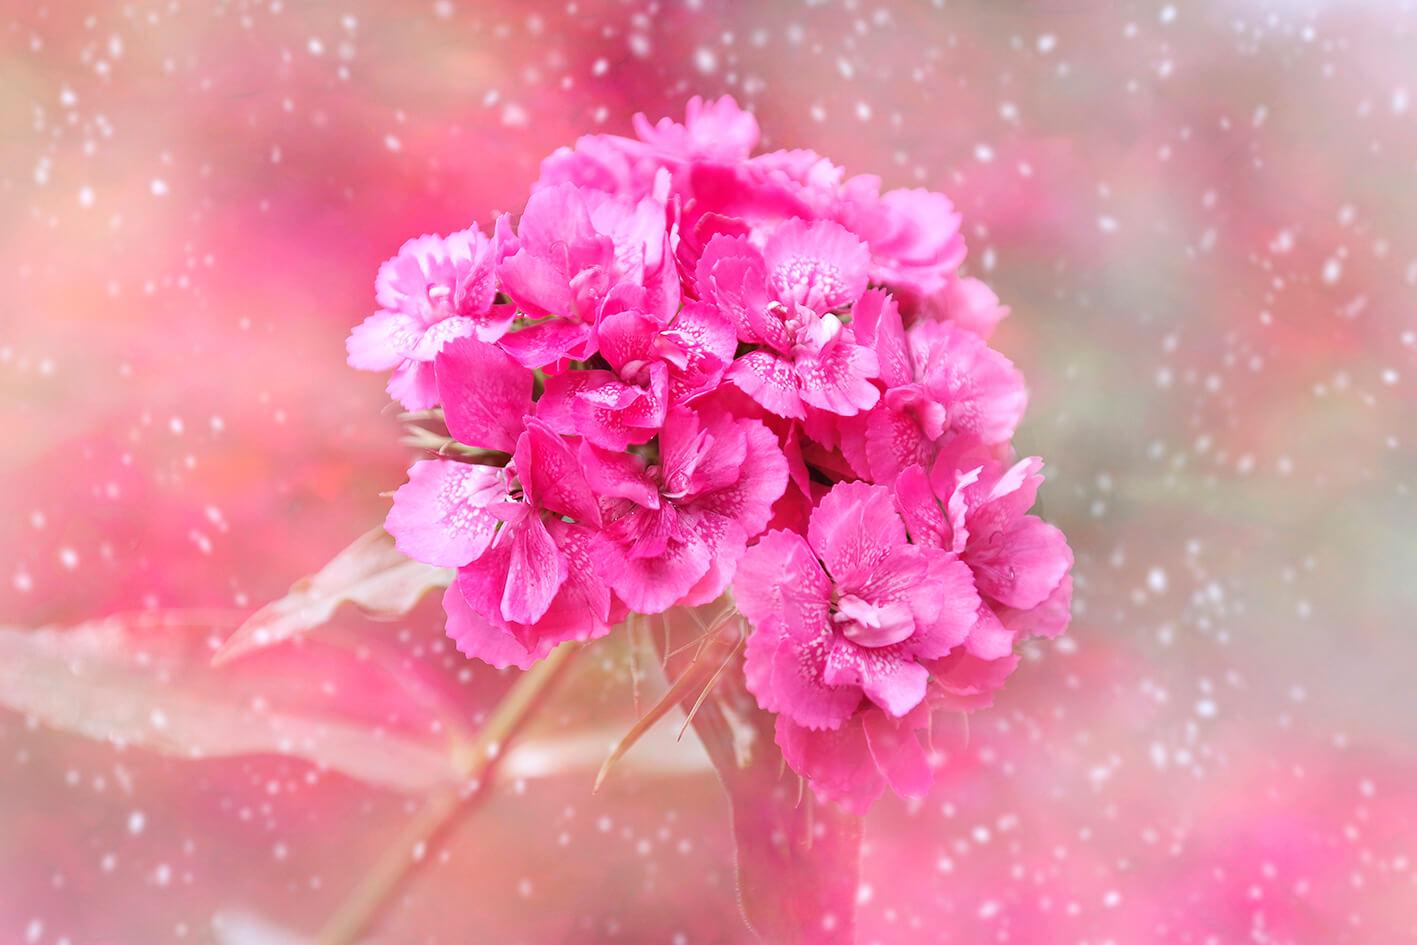 Carnation si ƒe amadede nye pink